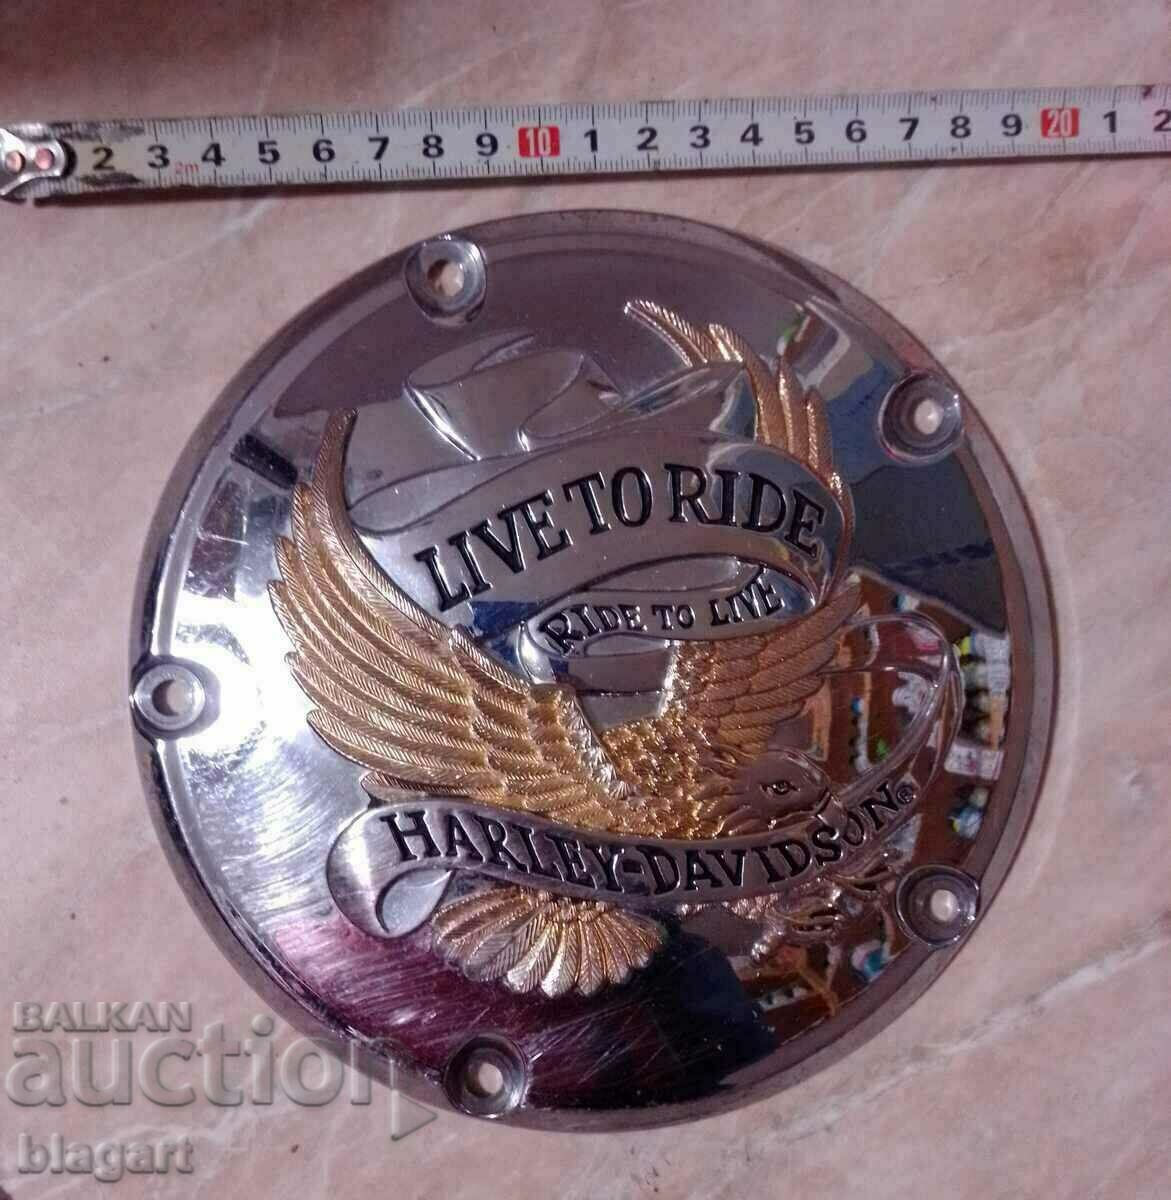 "Harley Davidson" - bronze, emblem